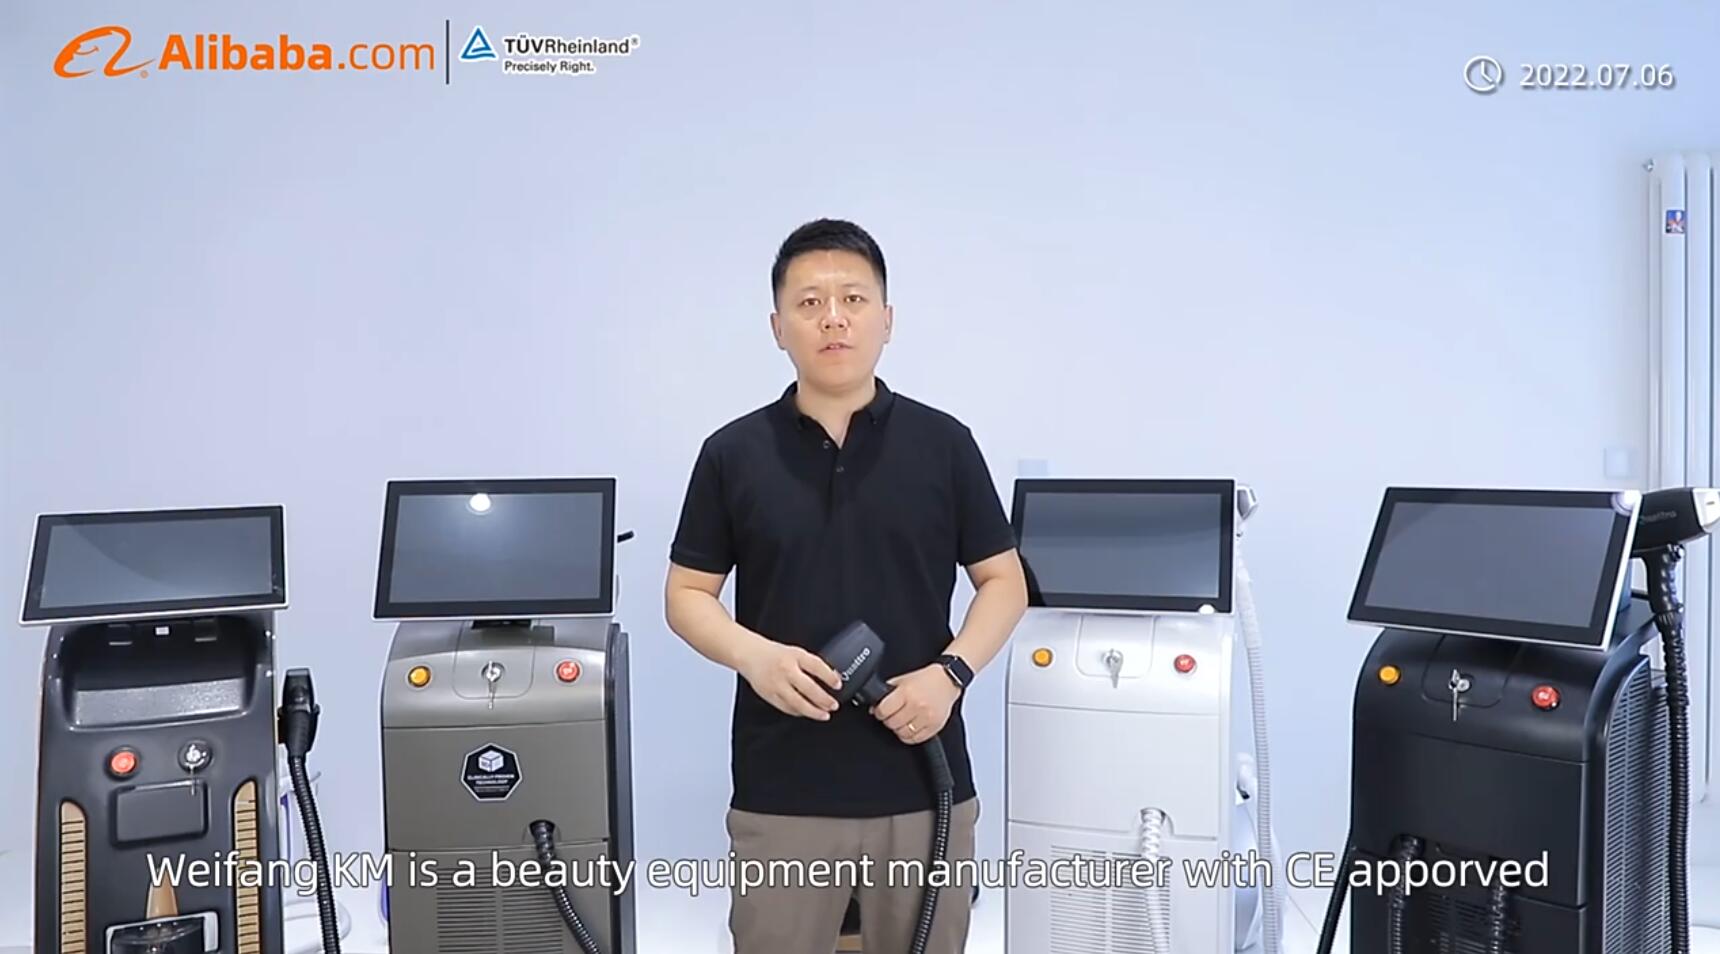 Aprobado por TUV 14 años Alibaba Weifang km Gold Proveedor Video